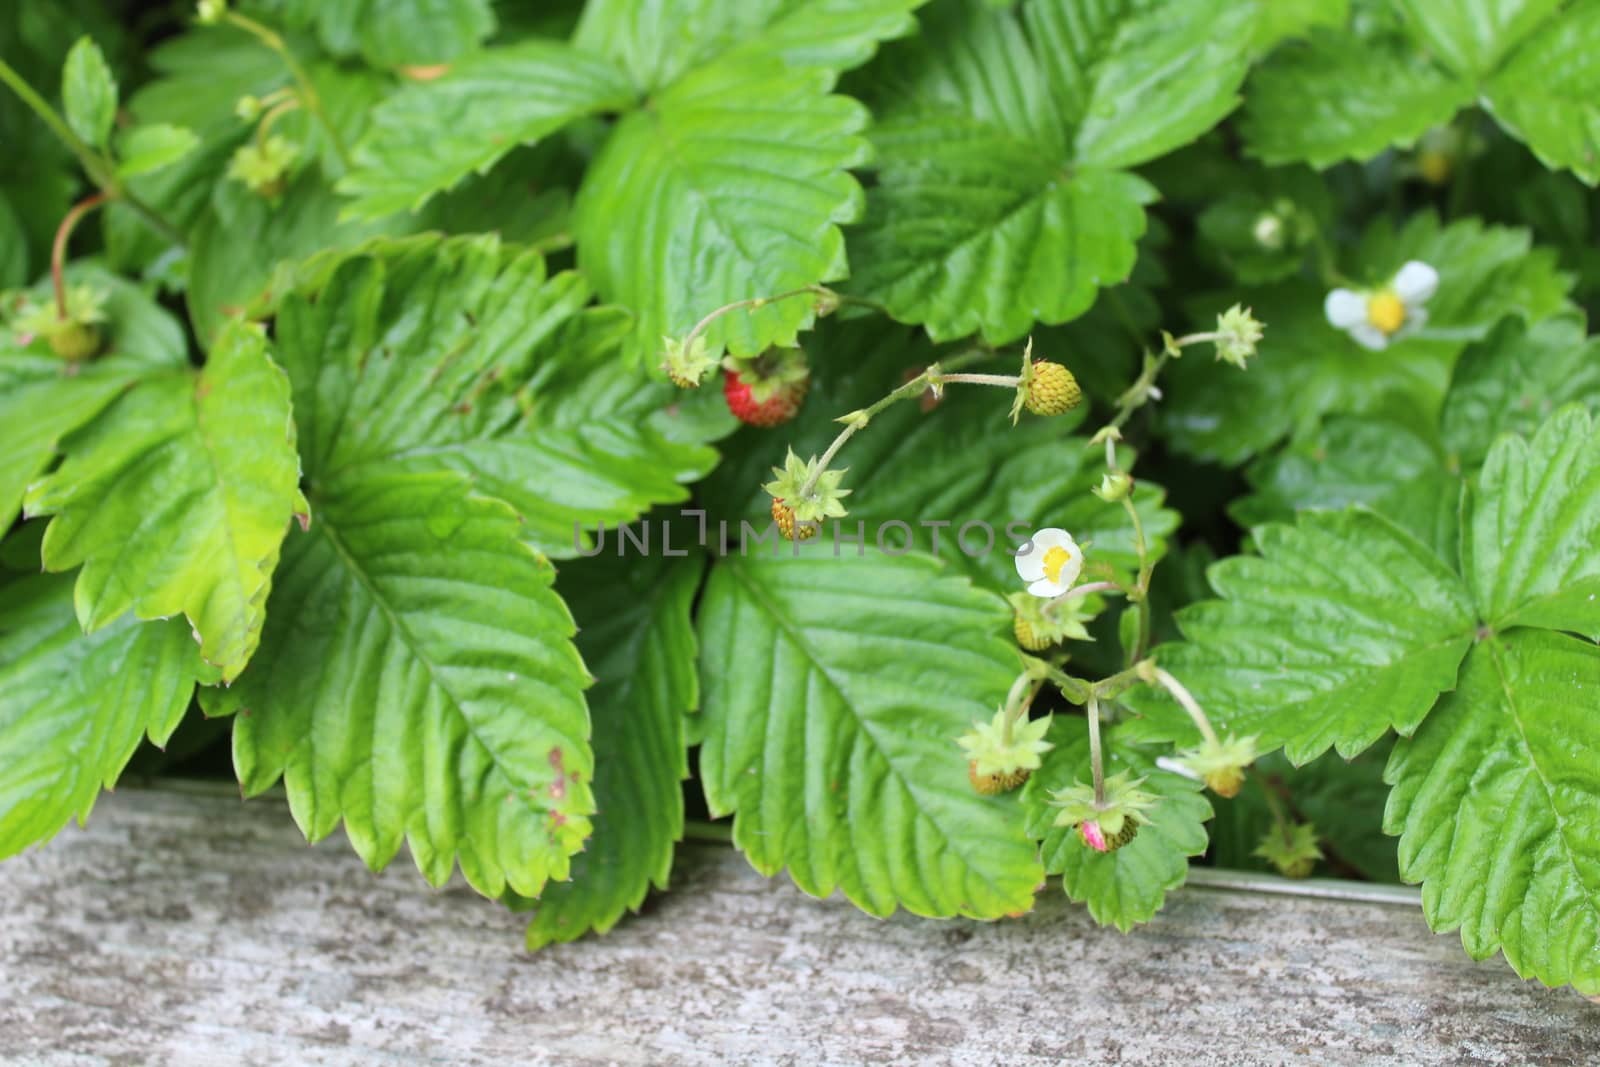 wild strawberries in the garden by martina_unbehauen